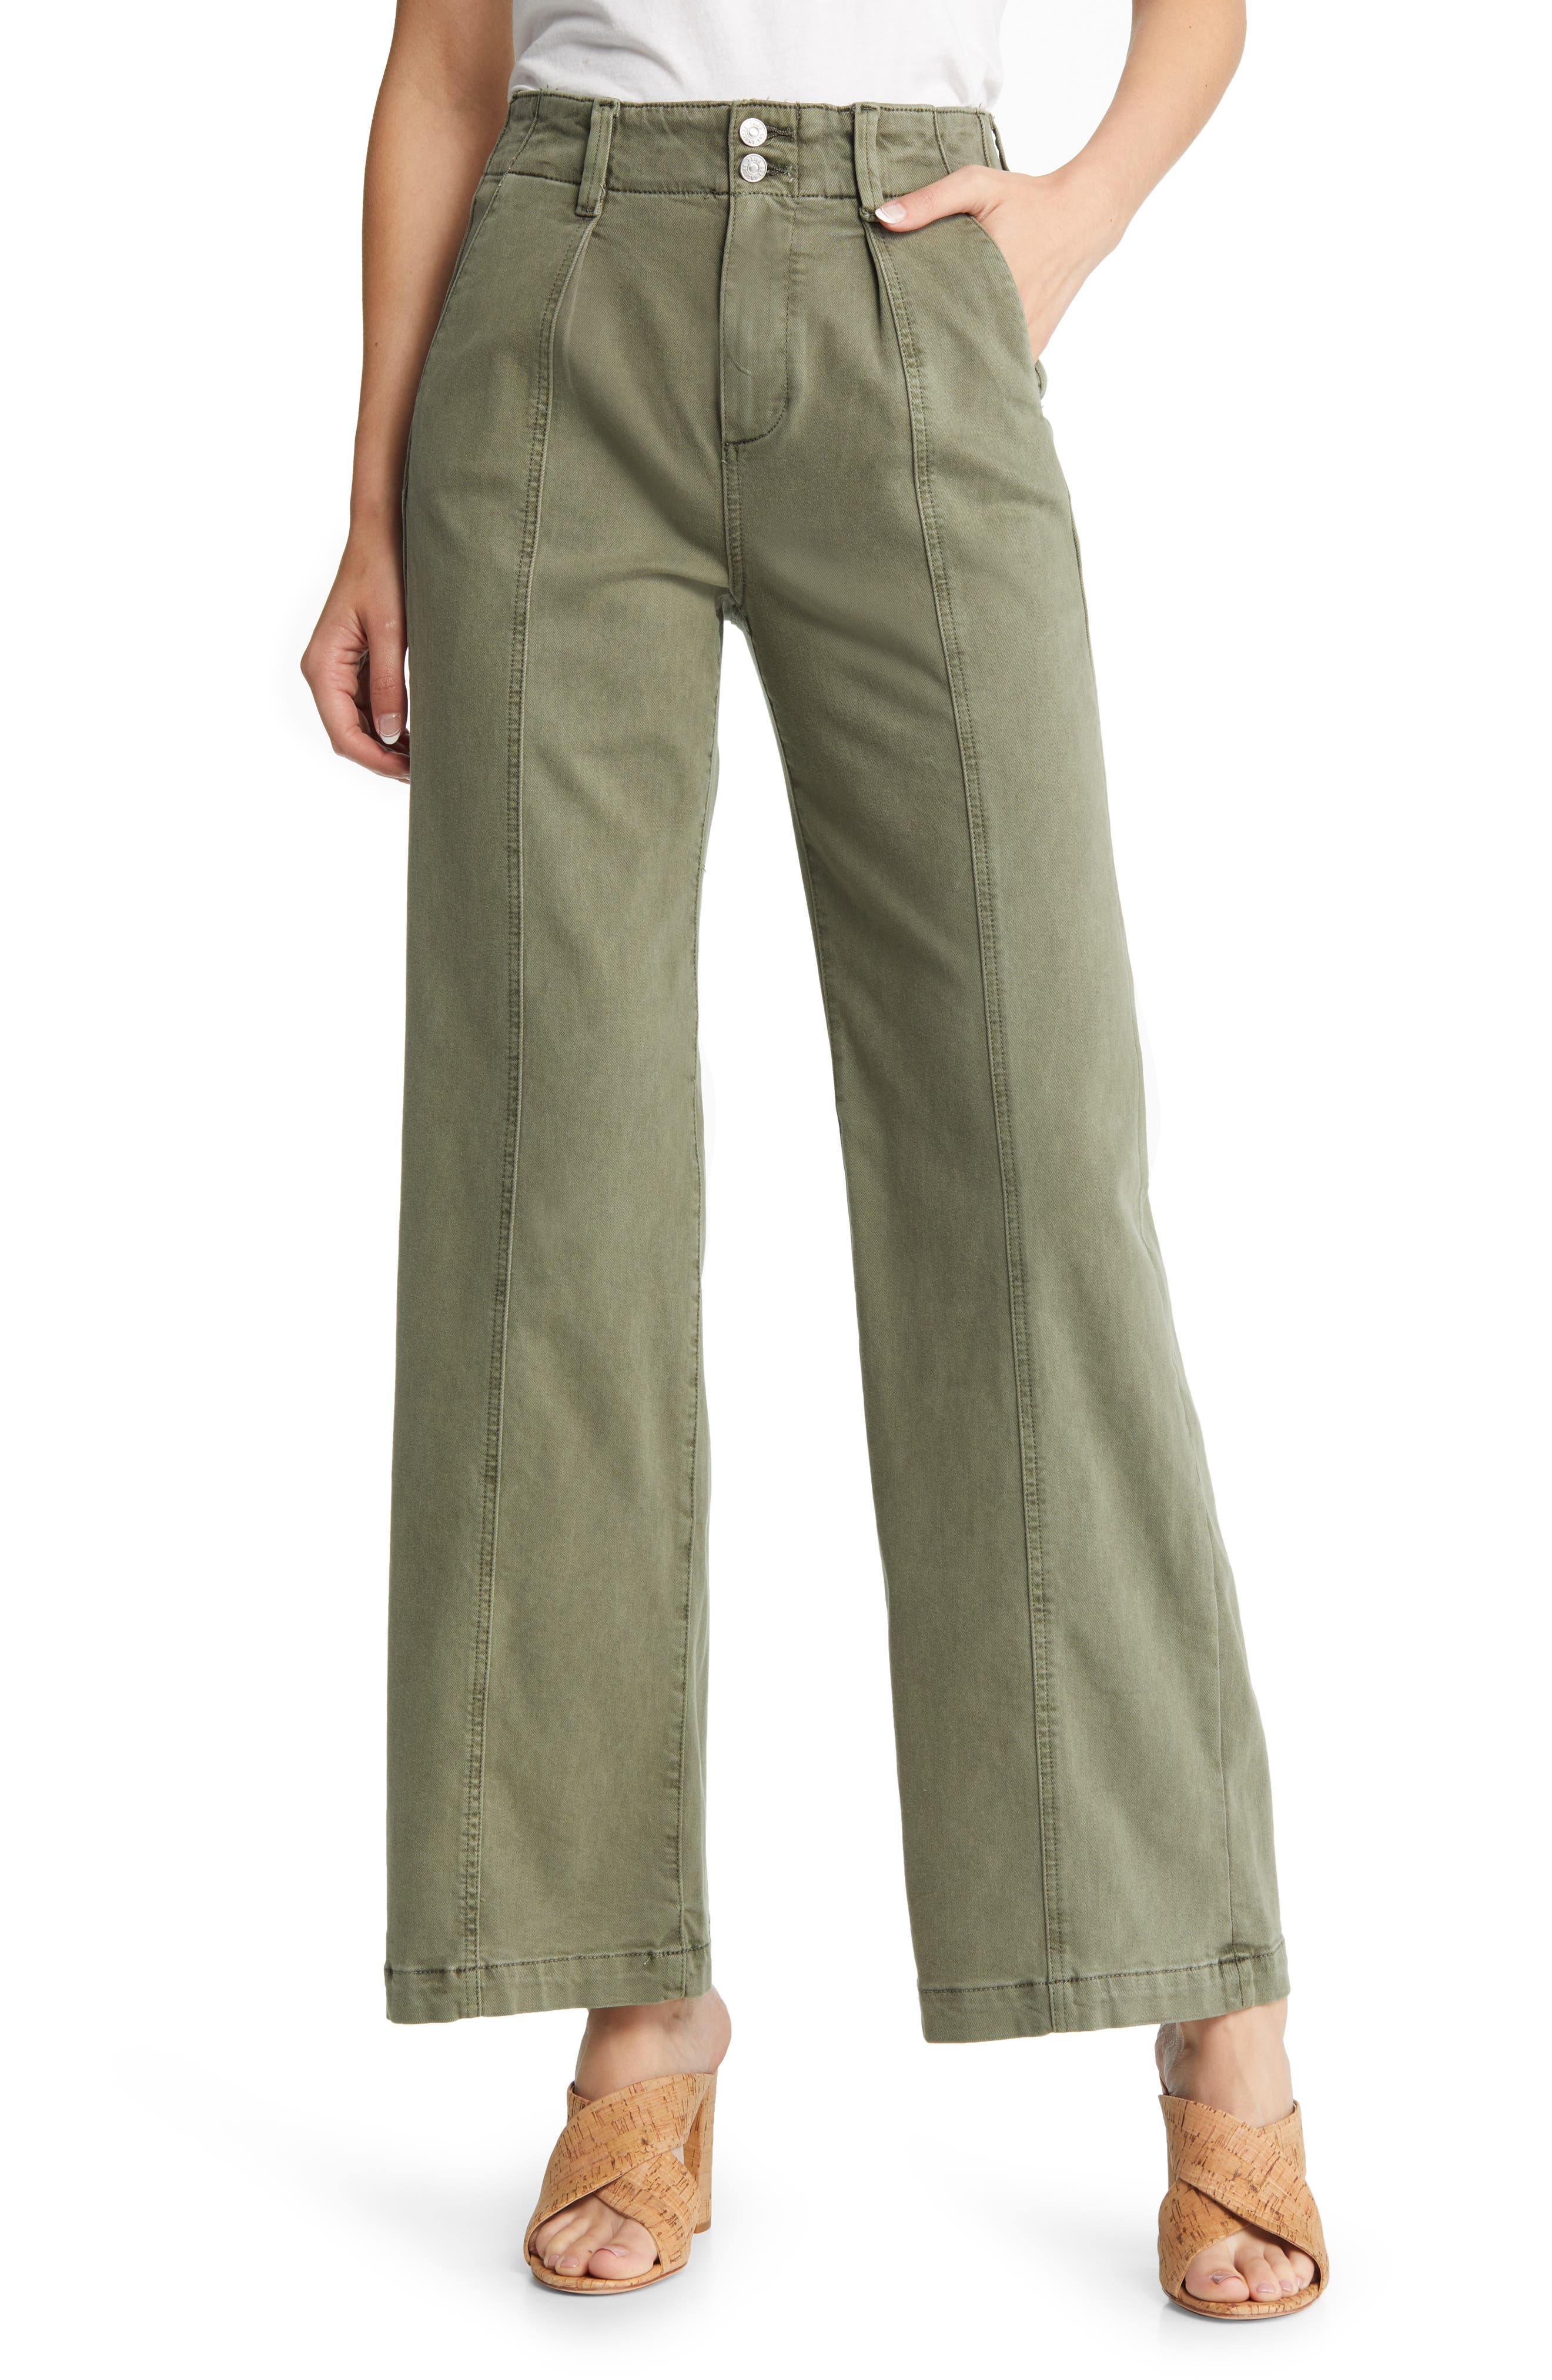 New Womens Green NEXT Crop Trousers Size 20 18 14 12 10 Long Regular RRP £24 